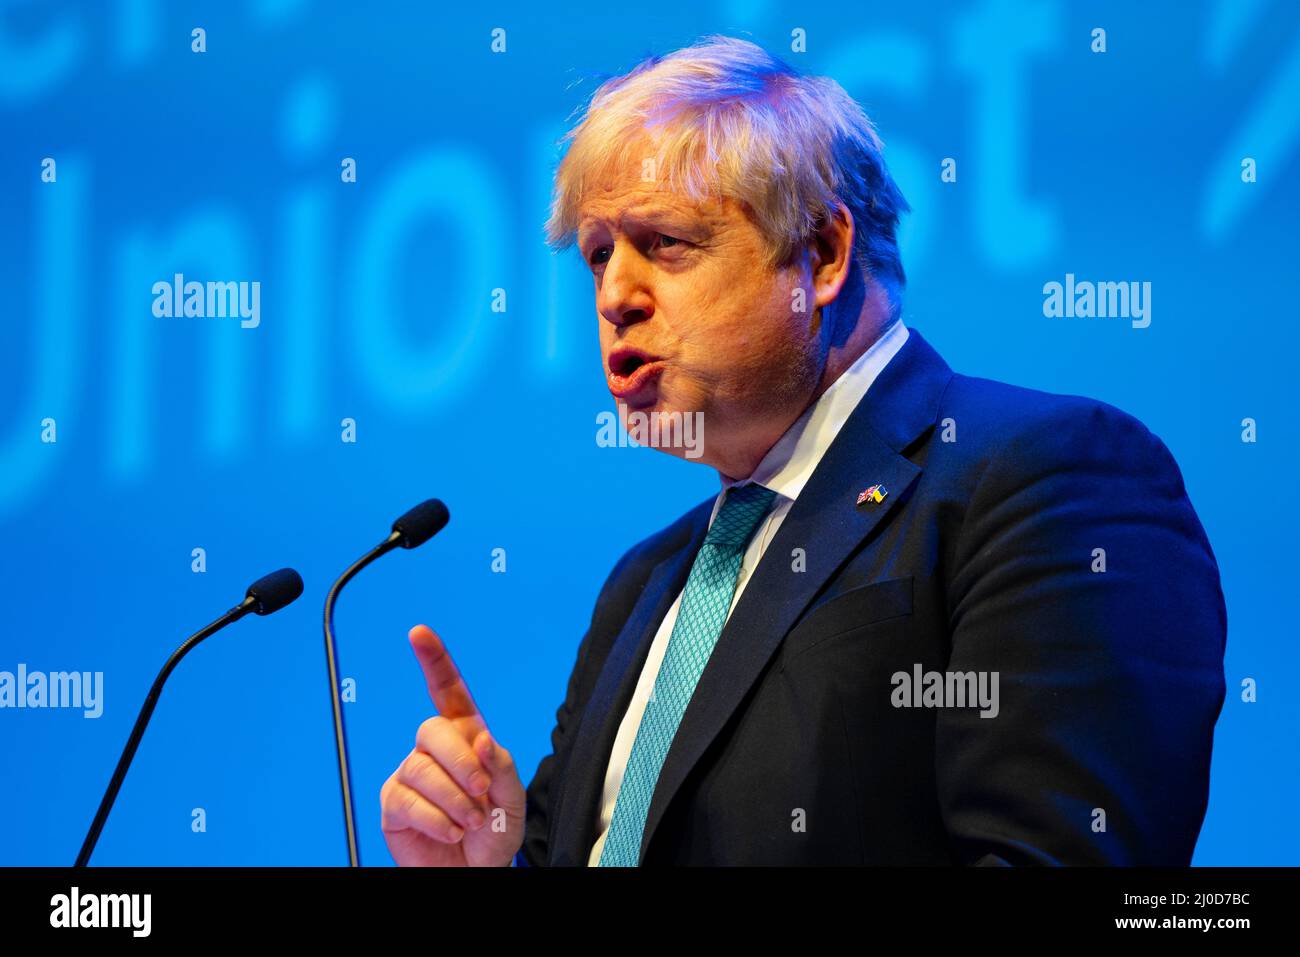 Aberdeen, Schottland, Großbritannien. 18.. März 2022. Premierminister Boris Johnson Keynote-Rede auf der Konferenz der konservativen Partei Schottlands 2022 auf der P&J-Konferenz in Aberdeen, Schottland. Iain Masterton/Alamy Live News Stockfoto